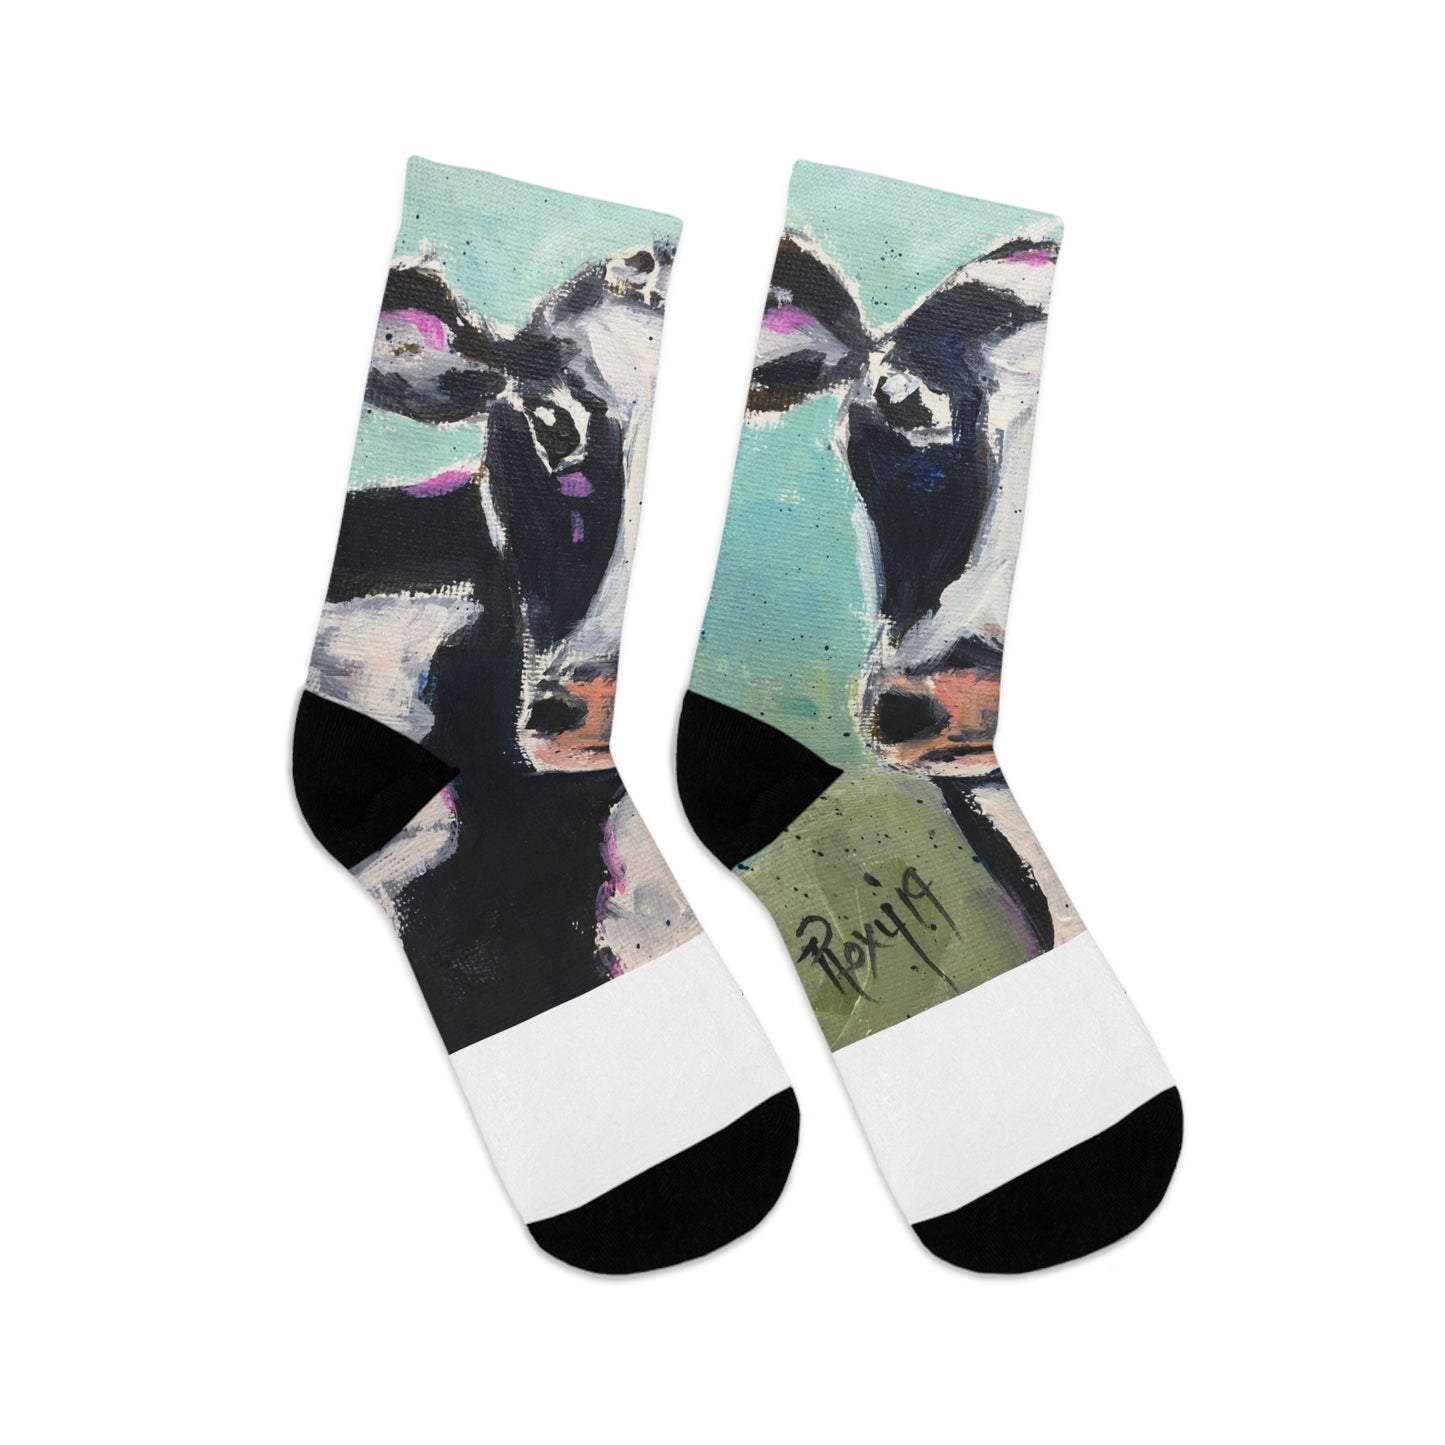 Edna Cow Socks